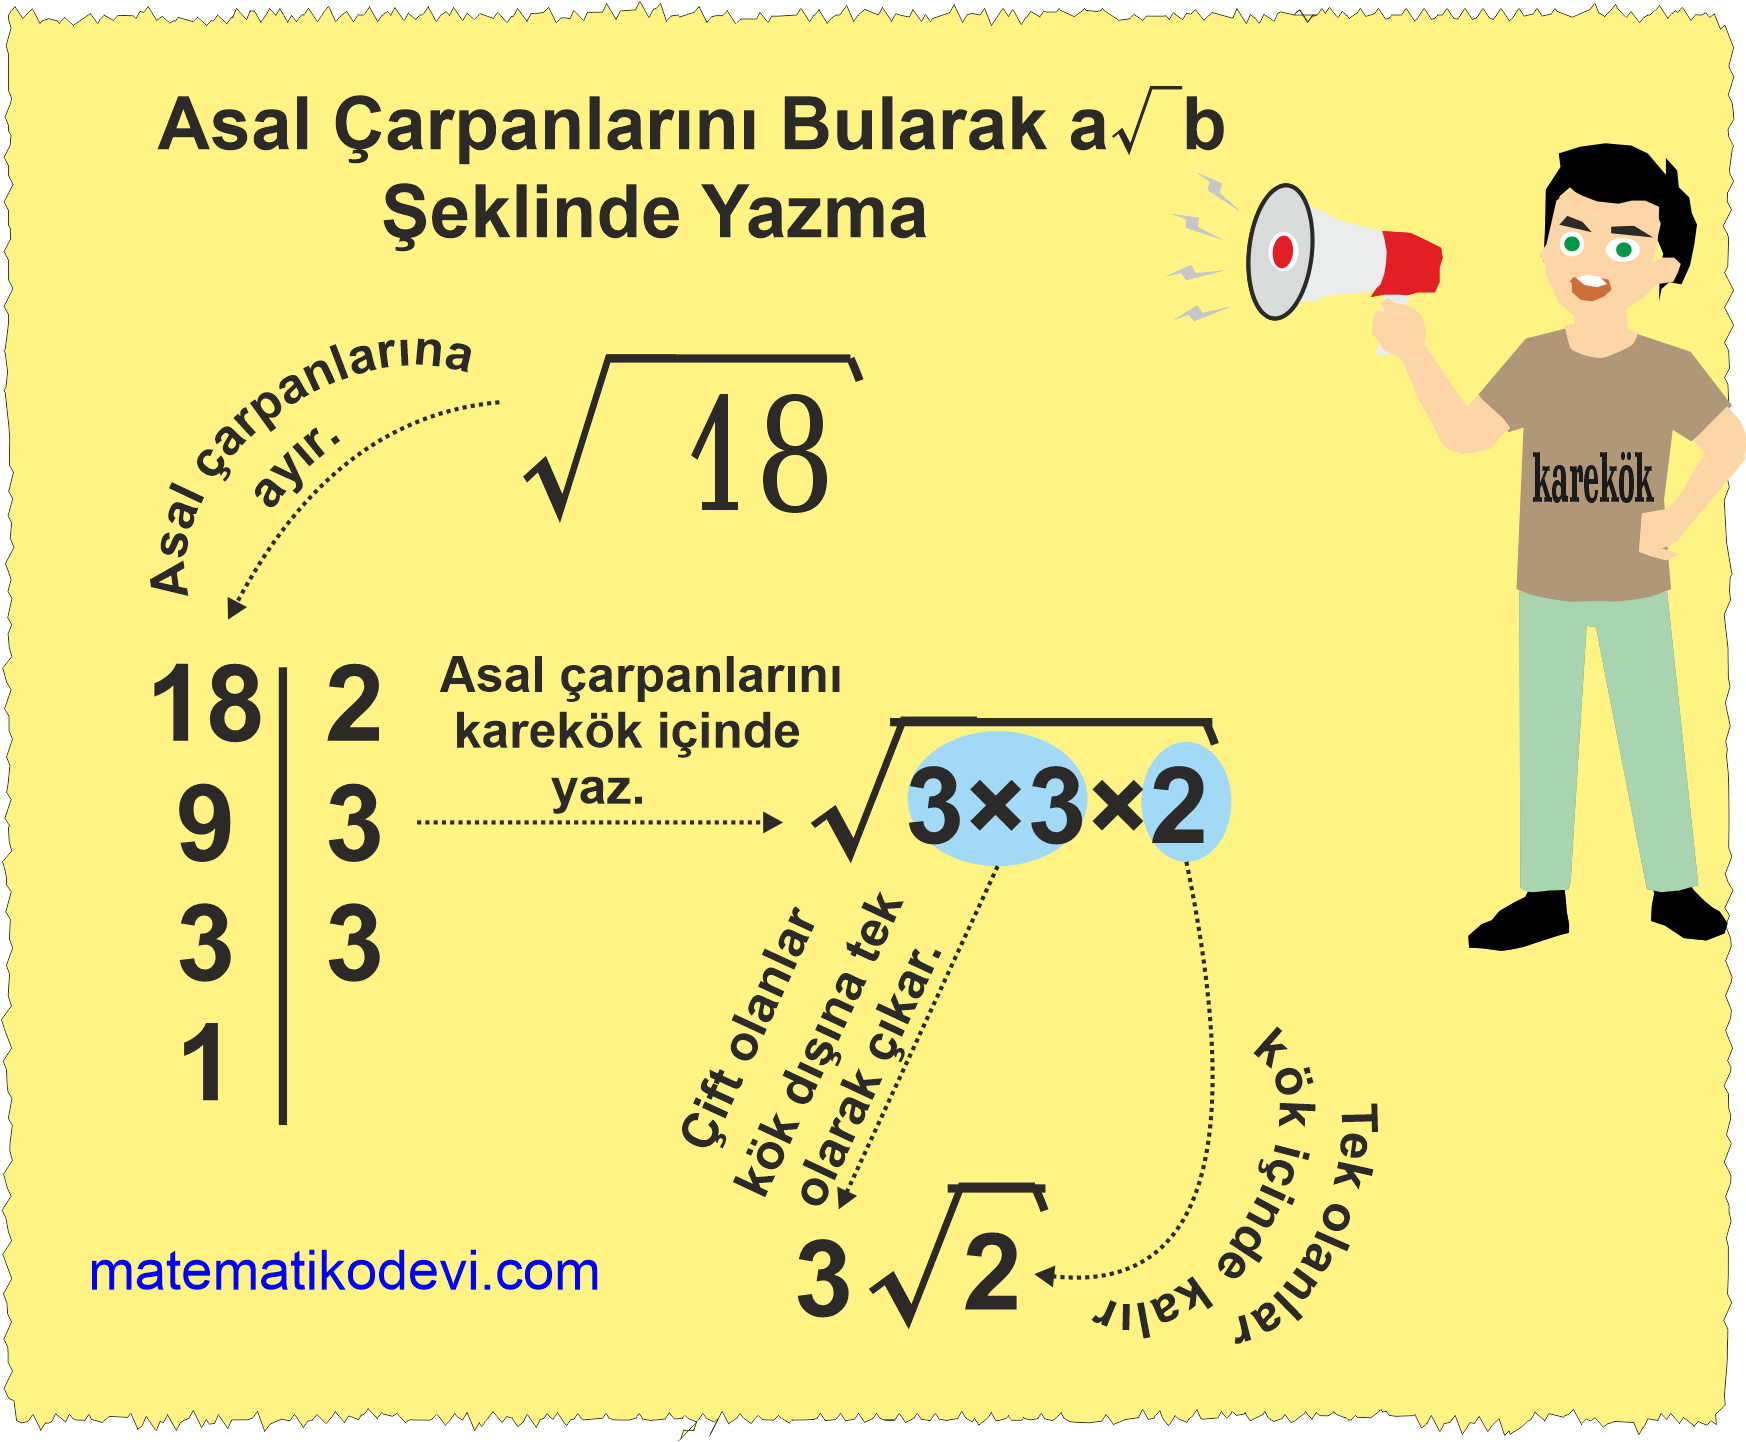 Karekoklu bir ifadeyi a√b seklinde yazar ve a√b seklindeki ifadede katsayiyi kok icine alir. 23